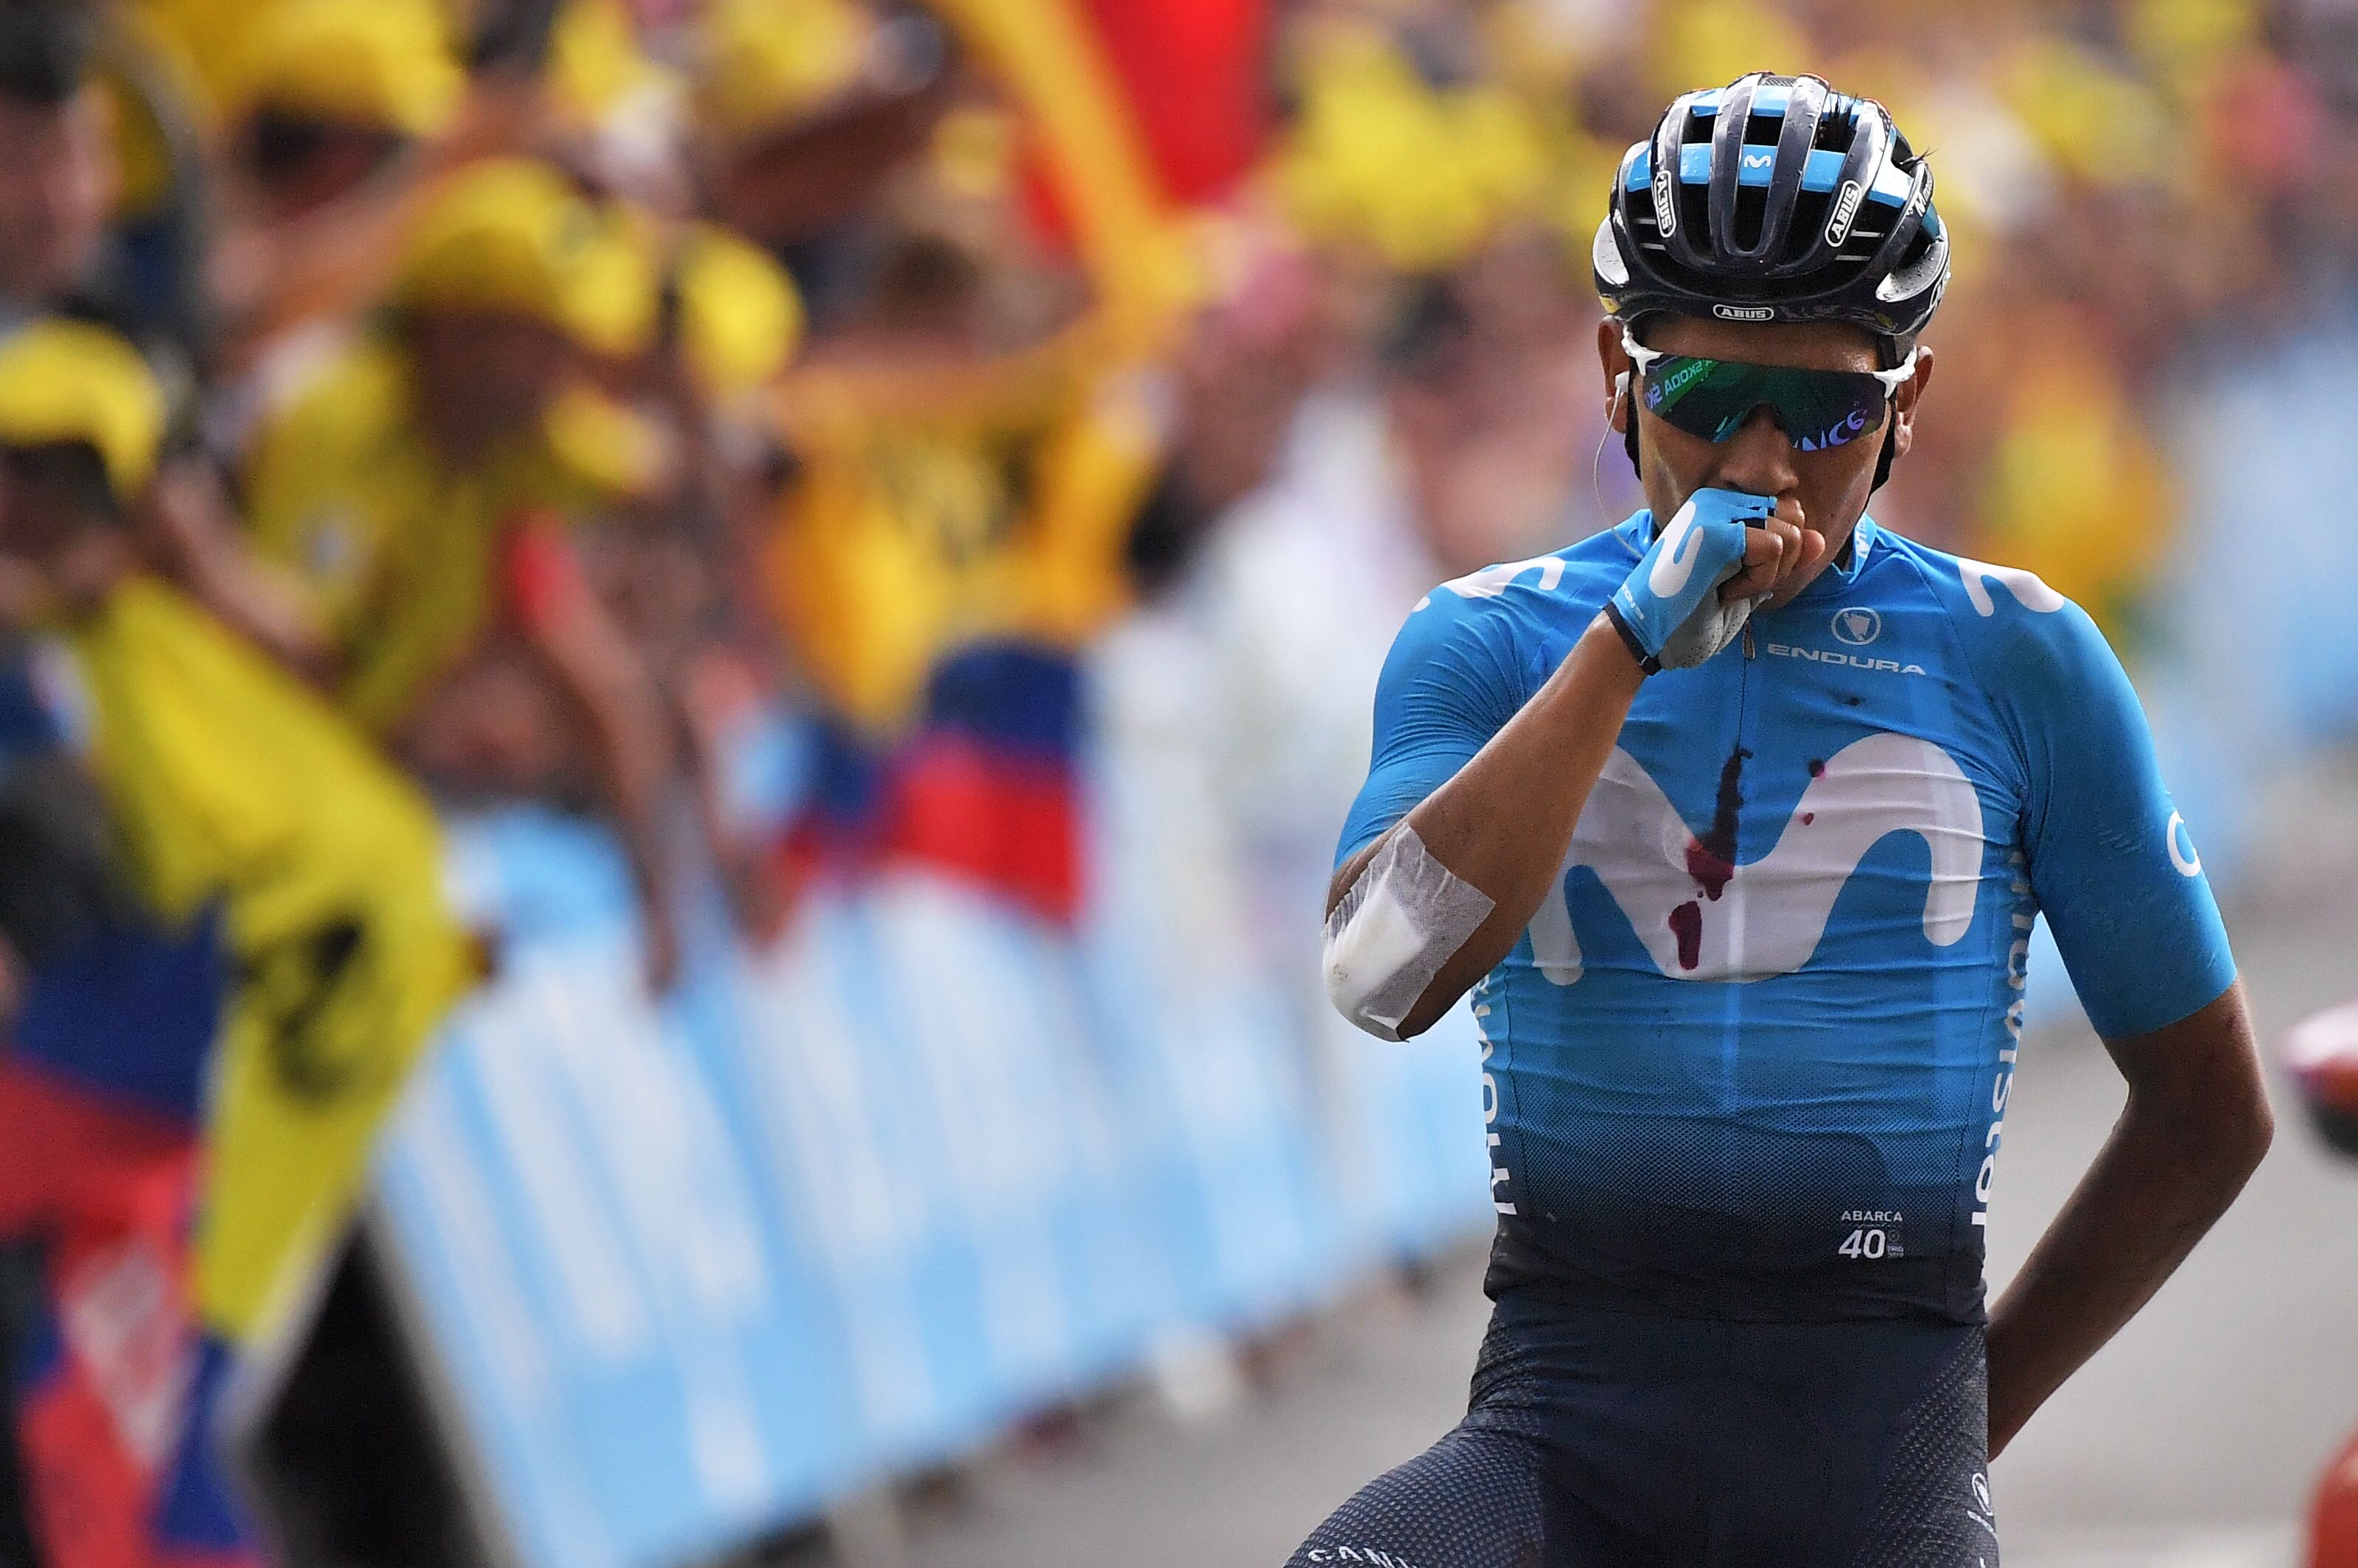 El ciclista colombiano Nairo Quintana mostró su poderío en la alta montaña en Los Alpes. (Foto Prensa Libre: AFP)